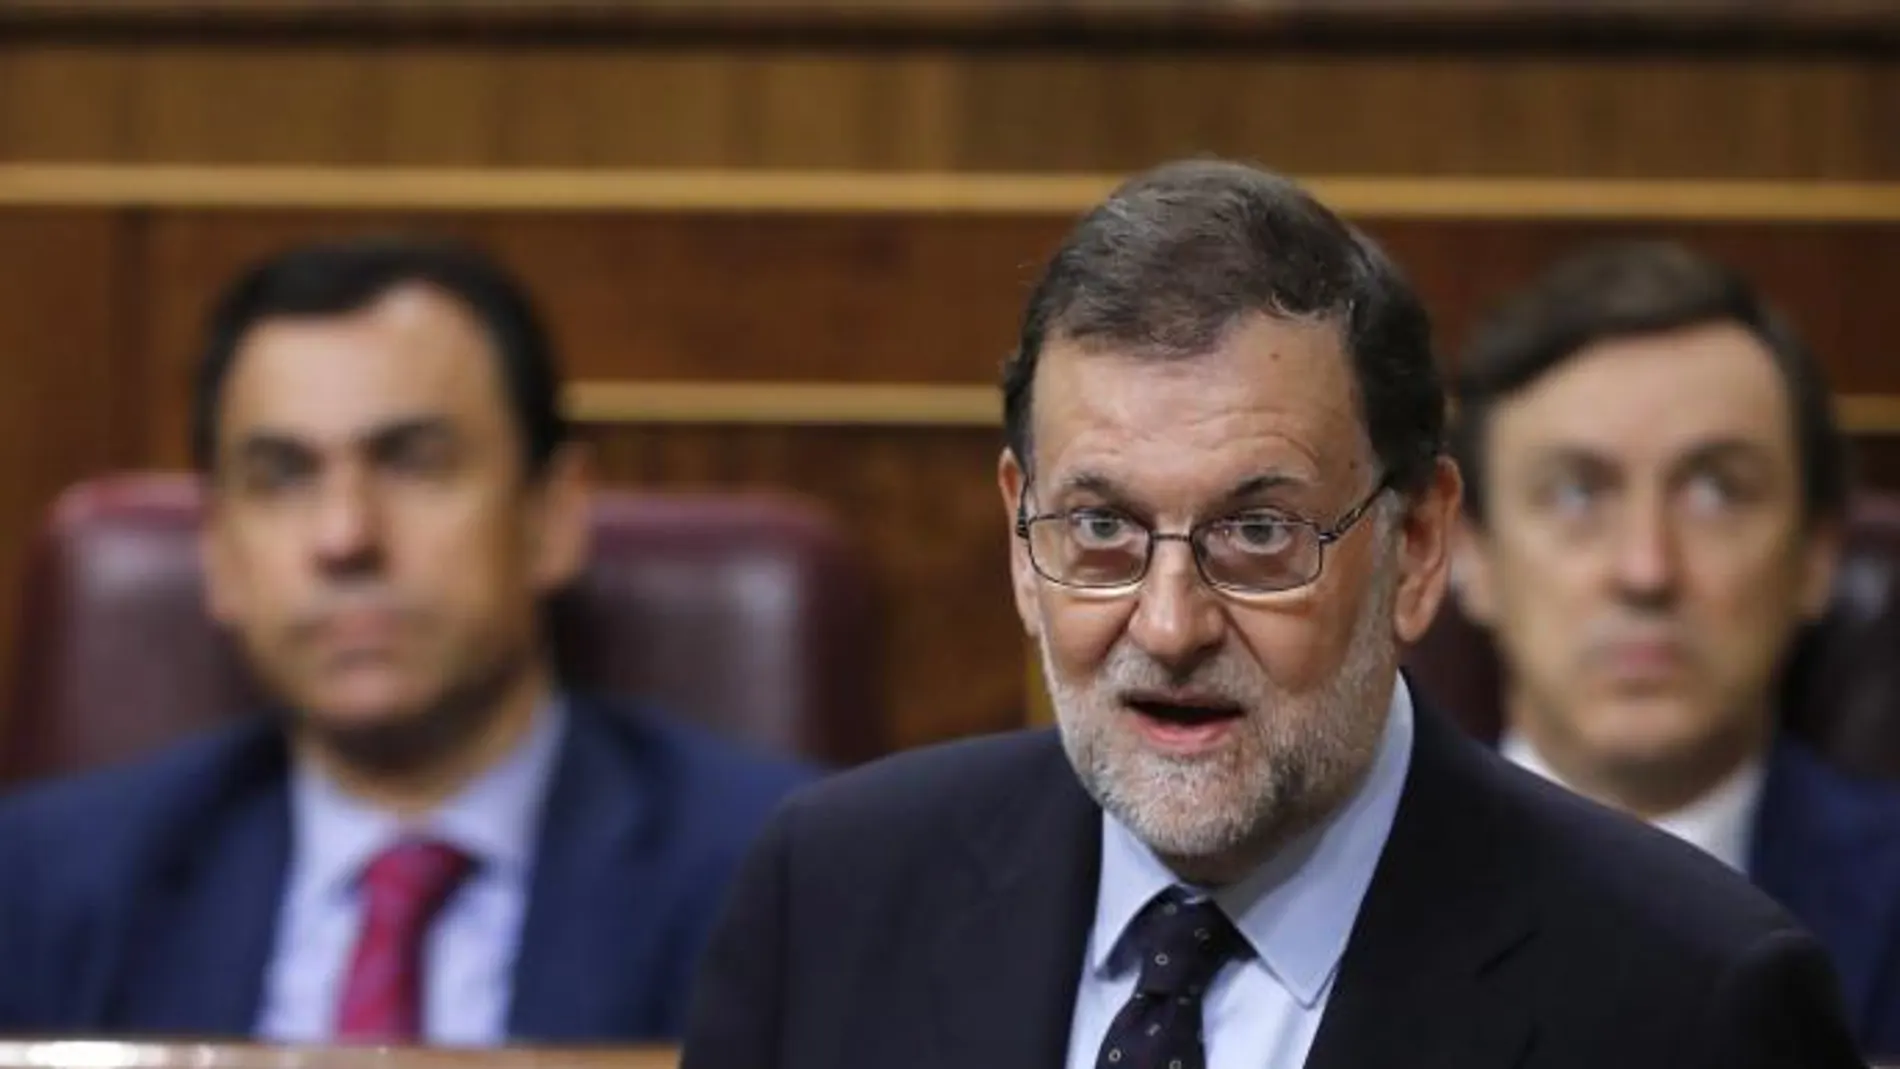 El presidente del Gobierno, Mariano Rajoy, durante su intervención en respuesta a la interpelación de la portavoz del Grupo Socialista, Margarita Robles, en la sesión de control al Gobierno referida a la amnistia fiscal y la sentencia del Tribunal Constitucional.